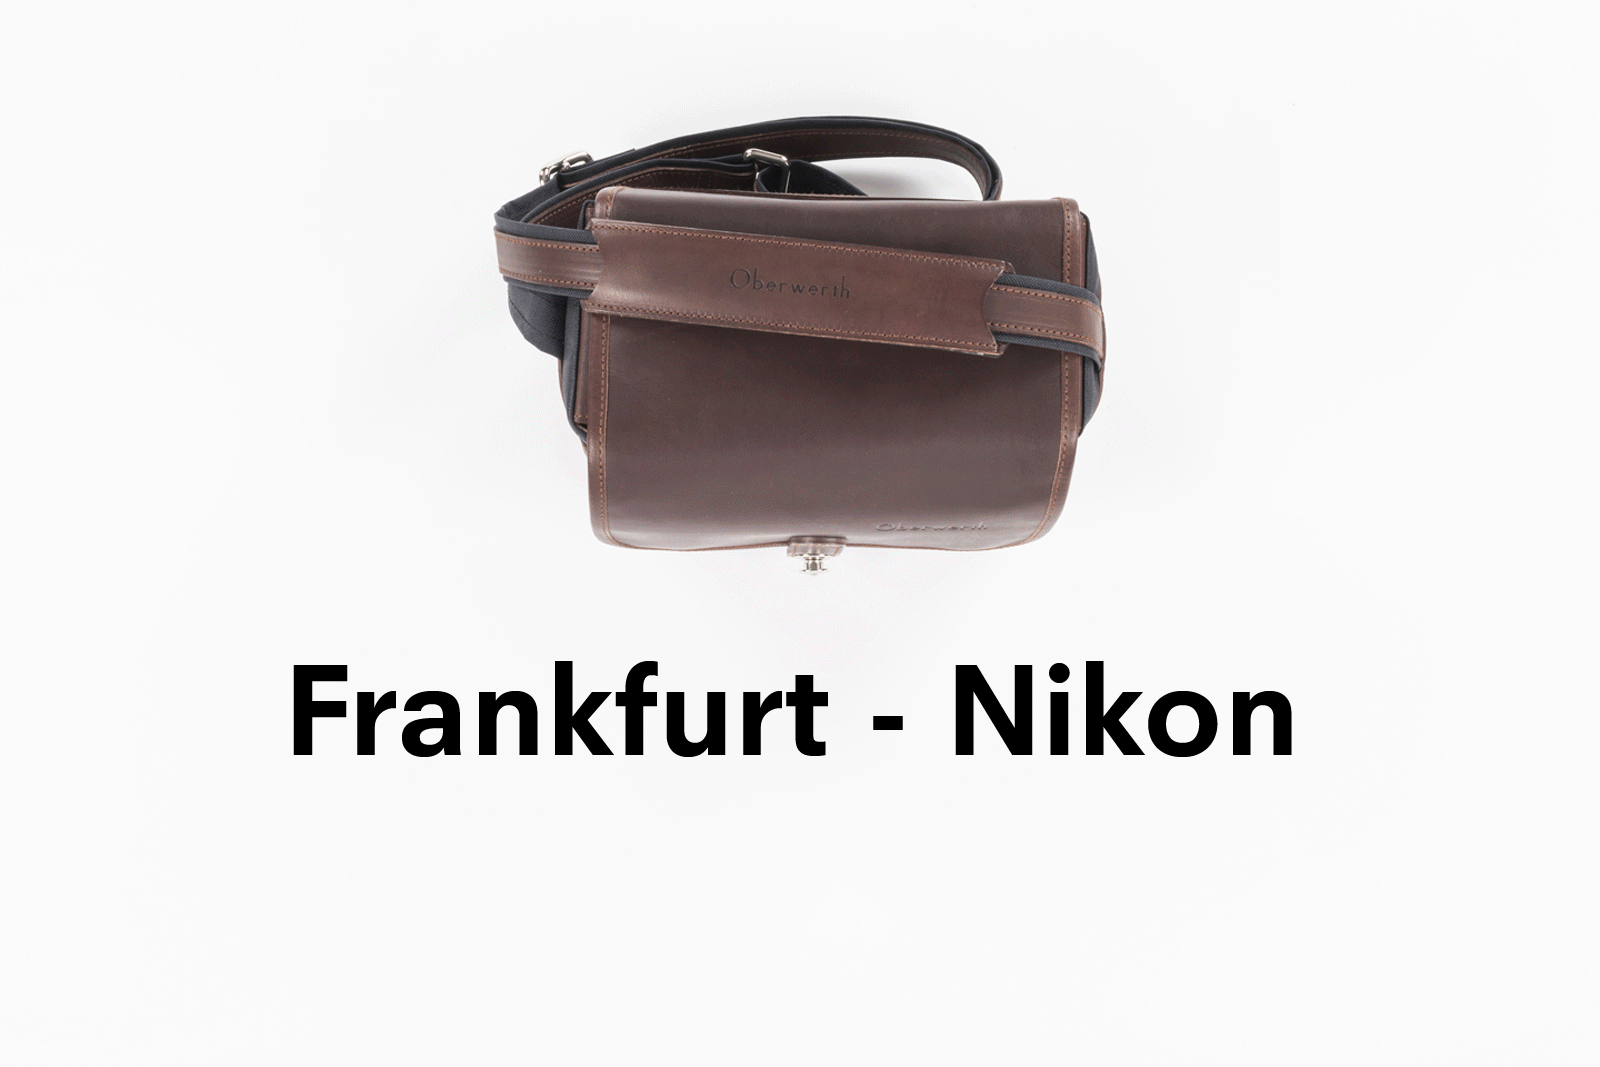 Camera bag FRANKFURT Black Line